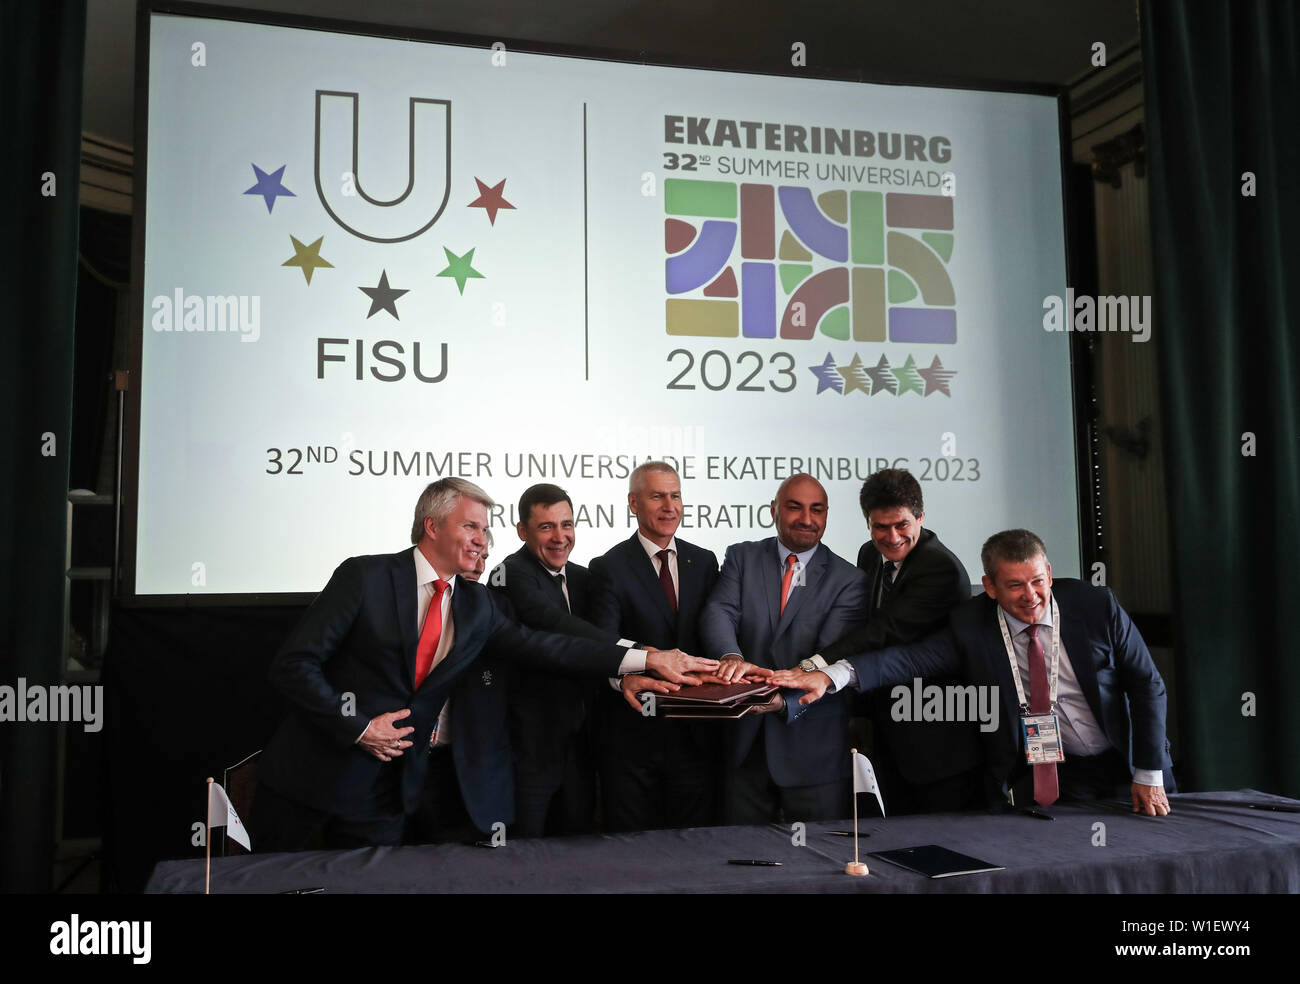 (190702) - Nápoles, 2 de julio de 2019 (Xinhua) -- La Federación Internacional de Deportes Universitarios (FISU) Presidente Oleg Matytsin (3L) posa para las fotos con delegados de Rusia es Ekaterimburgo comité de licitaciones en la ceremonia de la firma durante el 2019 Reunión del Comité Ejecutivo de la FISU en Nápoles, Italia, el 2 de julio de 2019. De Ekaterimburgo, Rusia fue elegida sede de las Universiadas de verano de 2023 durante la reunión del Comité Ejecutivo de 2019 FISU en Italia el Nápoles el martes. (Xinhua/Shan Yuqi) Foto de stock